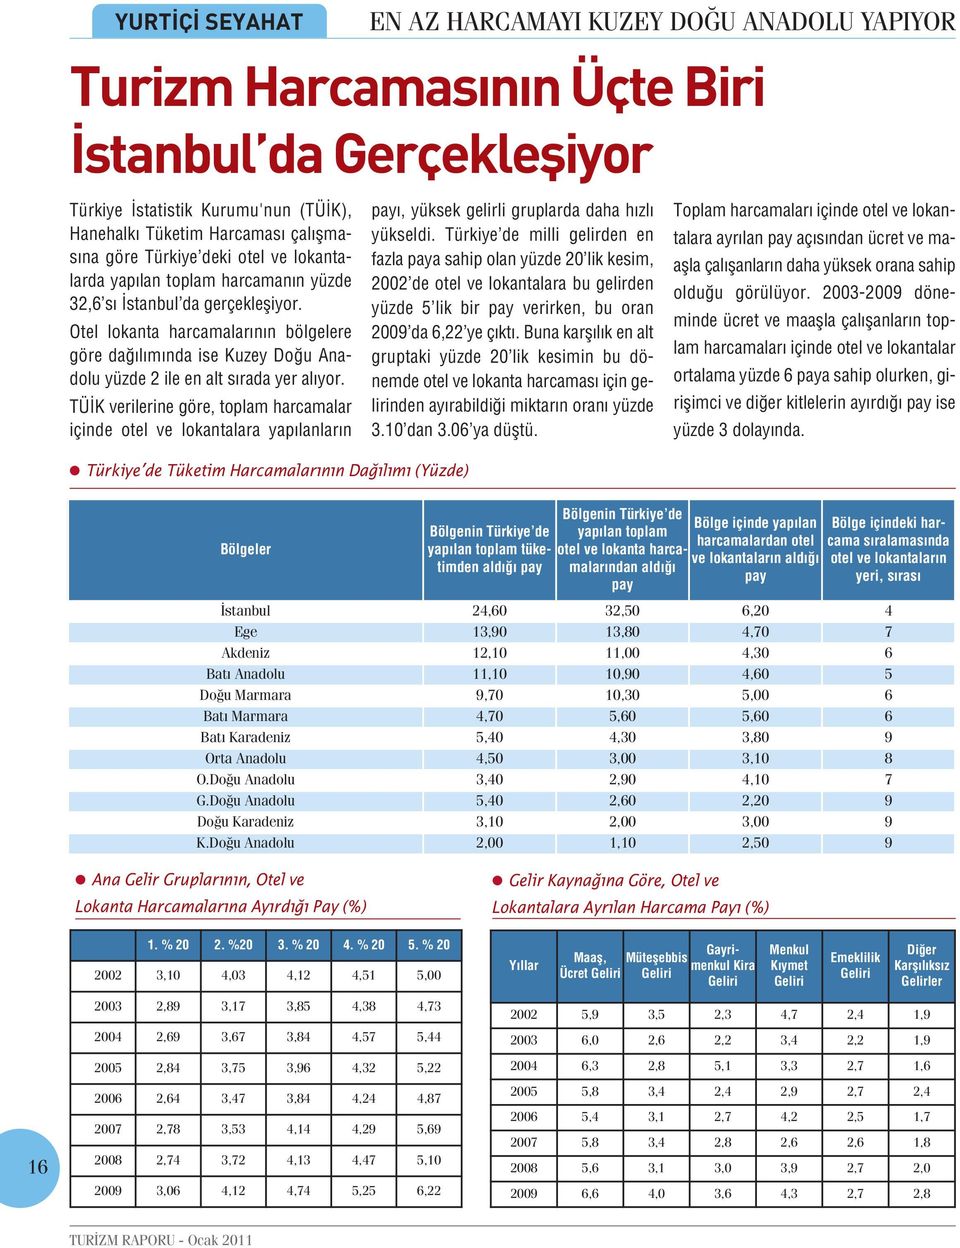 Otel lokanta harcamalarının bölgelere göre dağılımında ise Kuzey Doğu Anadolu yüzde 2 ile en alt sırada yer alıyor.